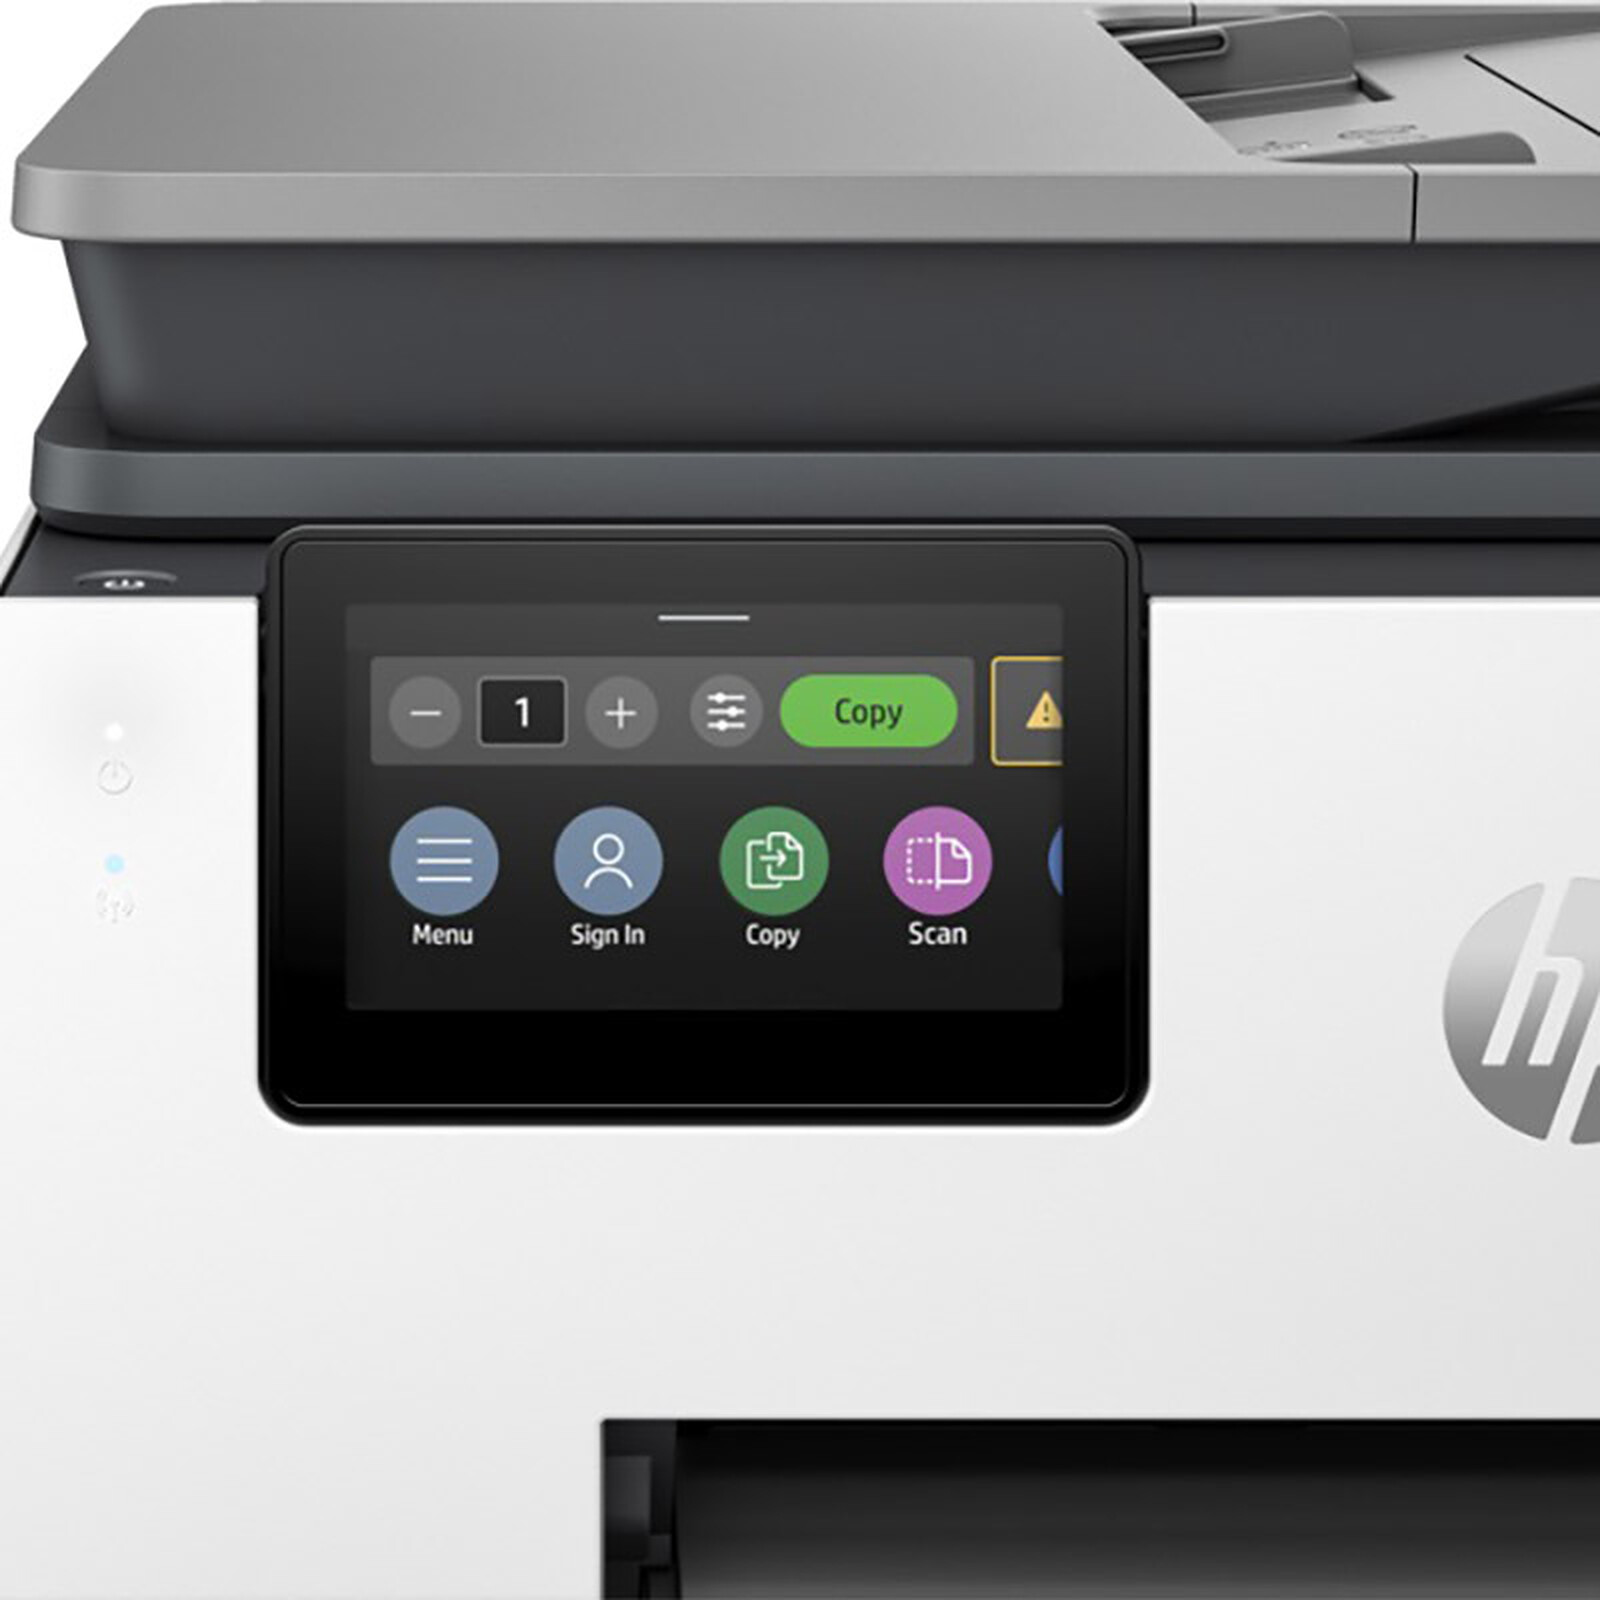 Imprimantes HP OfficeJet - Résolution des erreurs de type